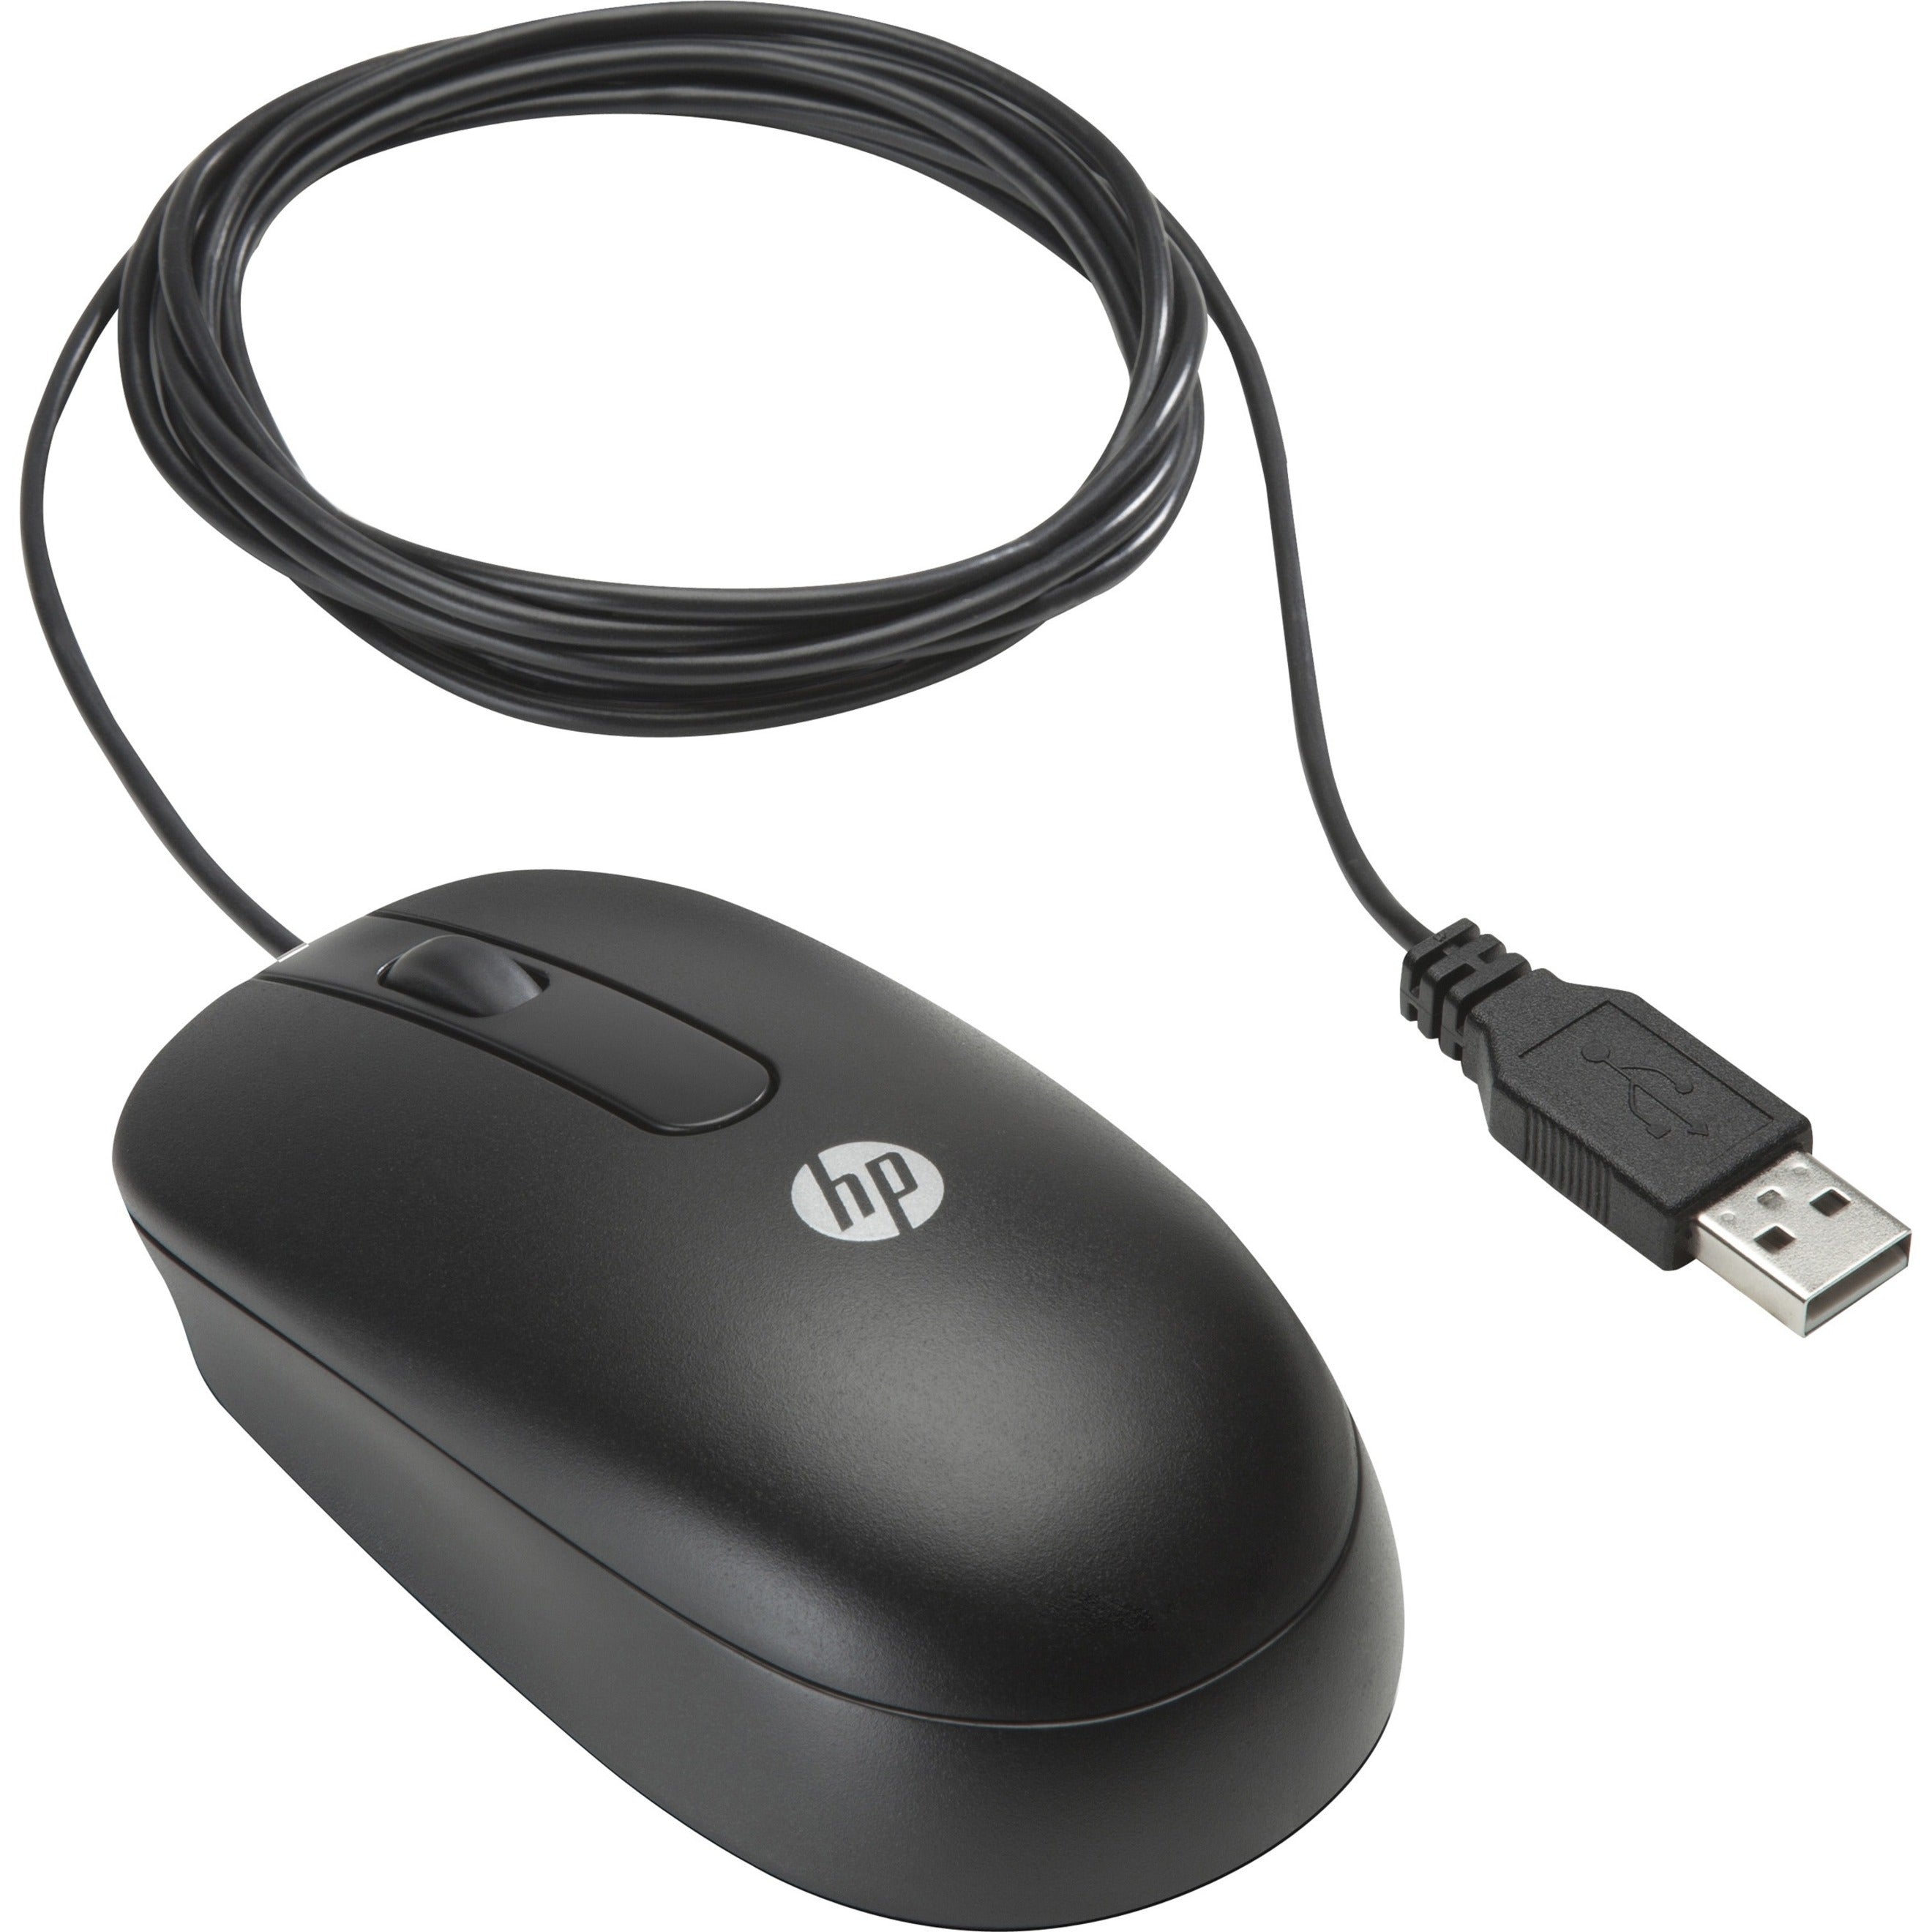 Mouse USB HP QY777AA Design Ergonomico Simmetrico Rilevamento del Movimento Ottico 3 Pulsanti 800 DPI Cavo da 591 piedi